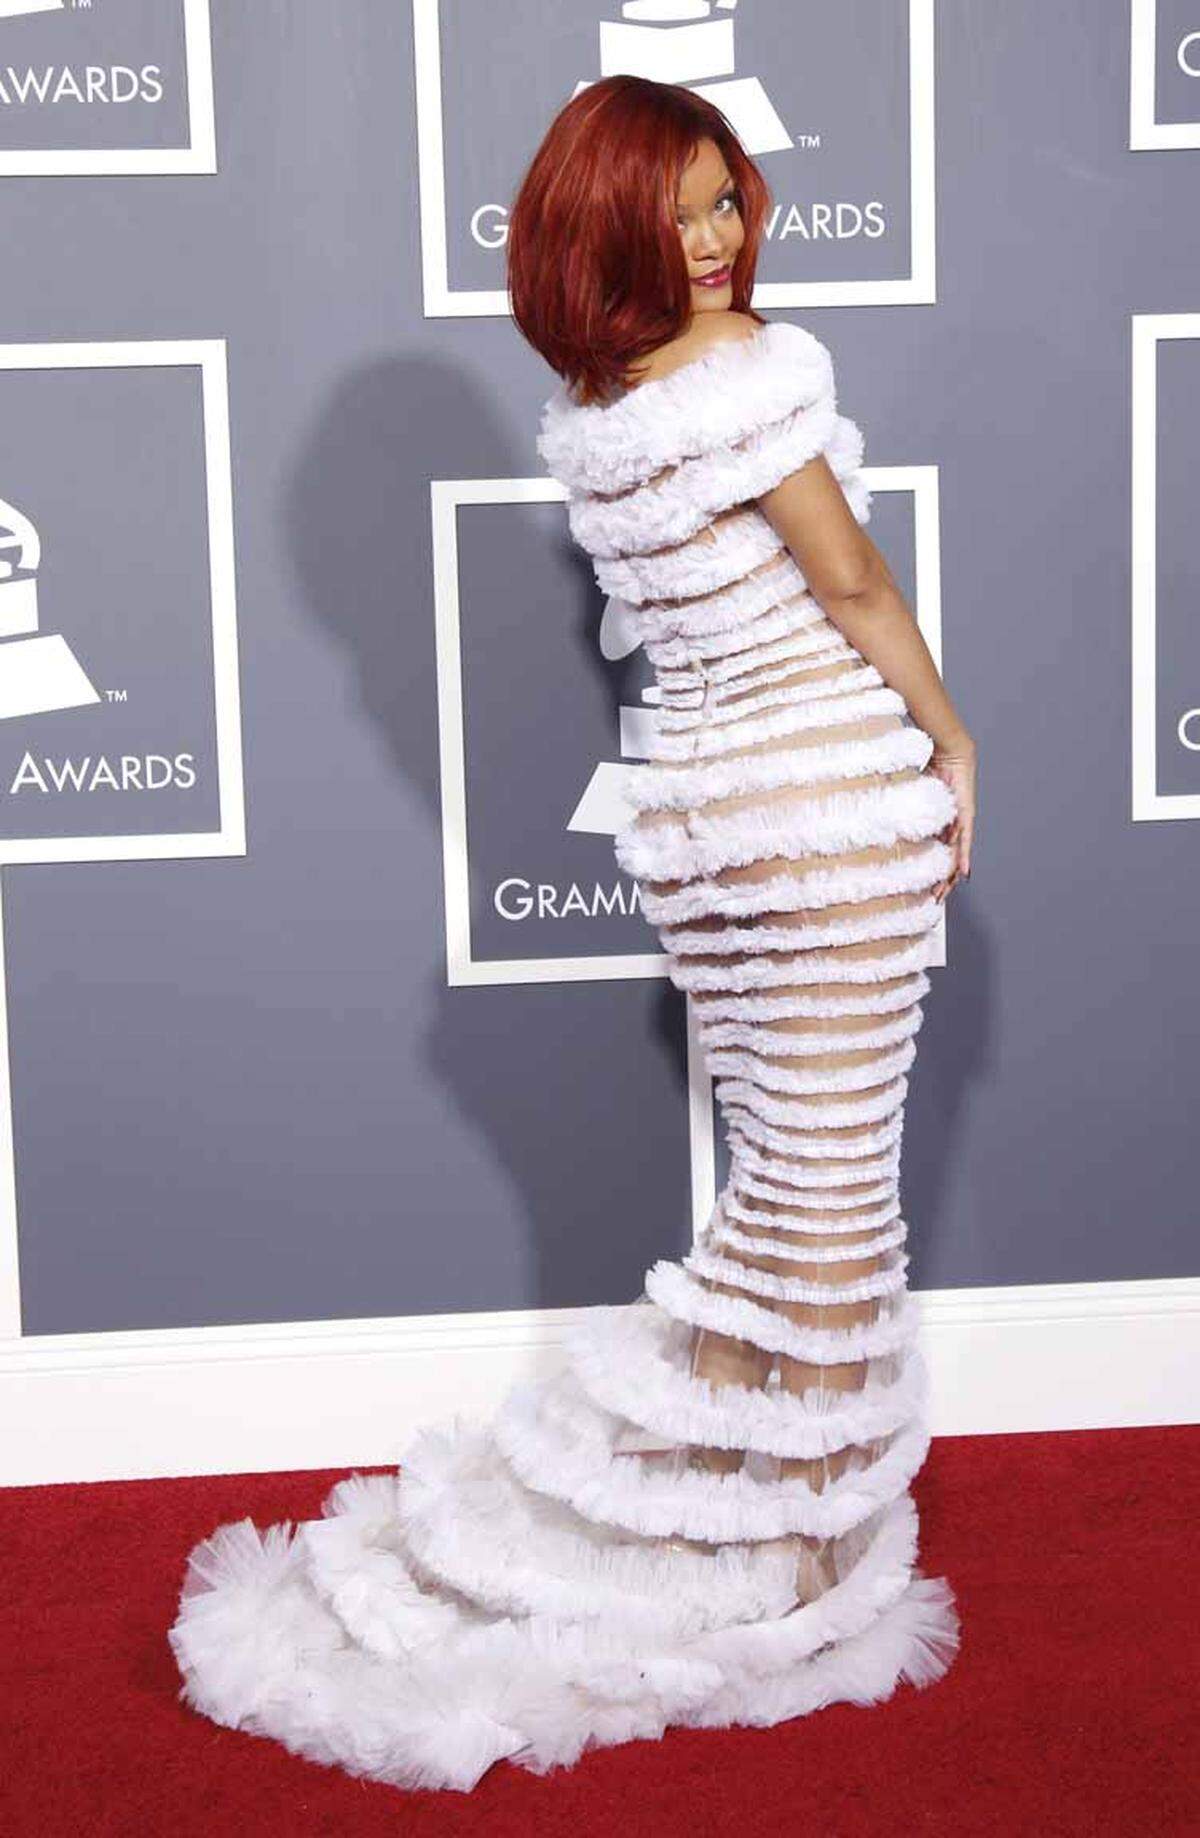 Immer kürzere und knappere Outfits haben in der Vergangenheit auf den roten Teppichen schon des öfteren für vielleicht nicht immer ganz freiwilligen Einblicken gesorgt. Damit soll jetzt Schluss sein, wie die britische Online-Vogue berichtet.Rihanna in einer teilweise transparenten Robe von Jean Paul Gaultier 2011.